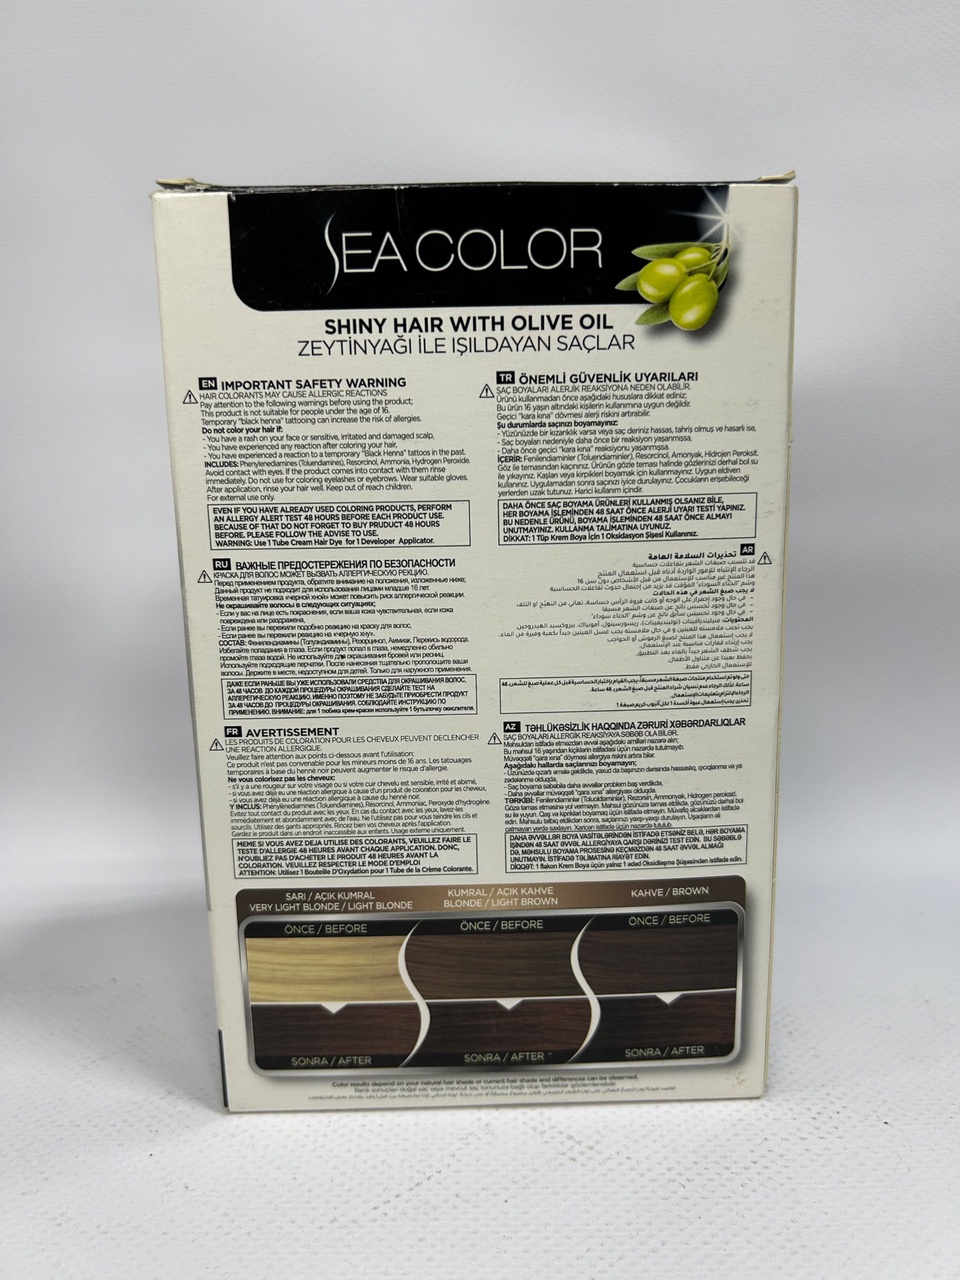 Sea Color 7.7 Краска д/волос «Темная карамель» - 300 ₽, заказать онлайн.